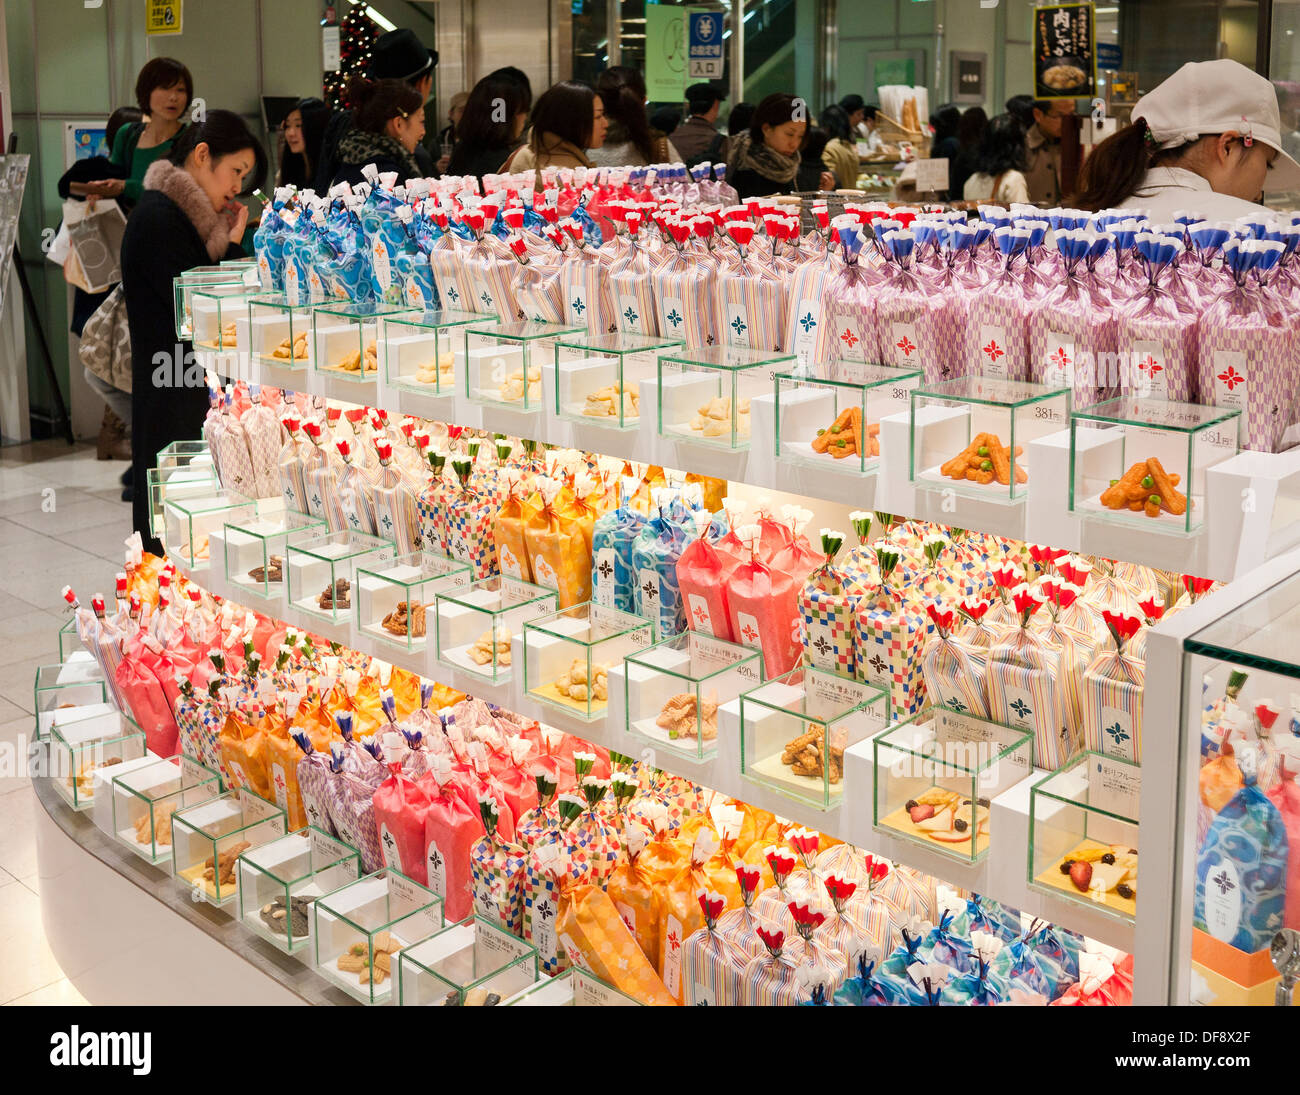 Bonbons japonais et des aliments destinés à la vente au Magasin Sogo Shopping Area (sous-sol) avec Depachika Food Hall au Japon. Banque D'Images